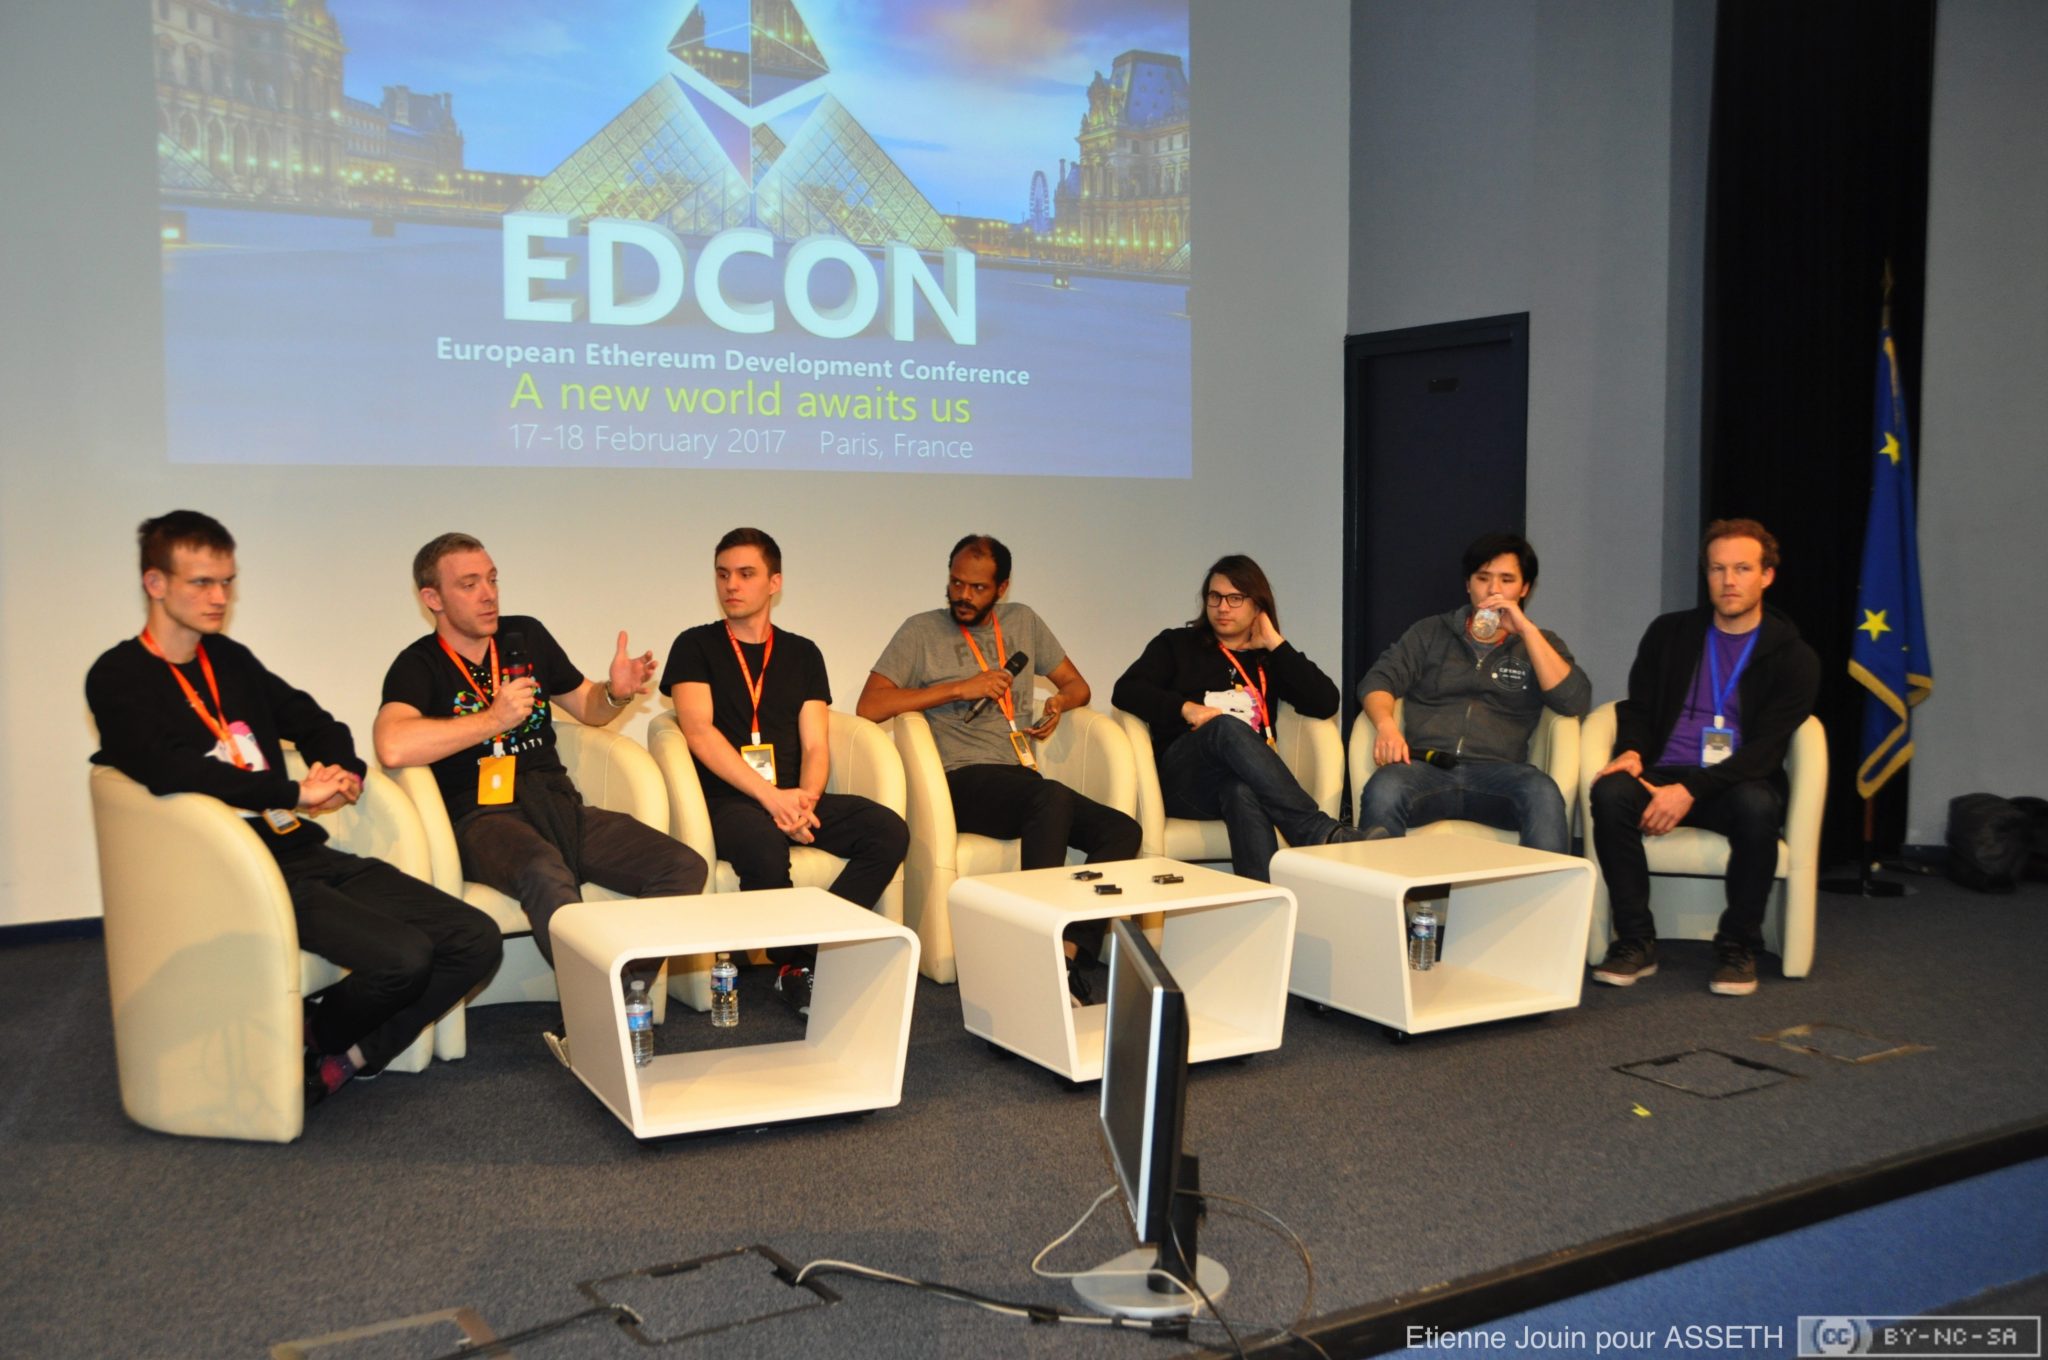 Retour sur l’EDCON, première conférence européenne sur Ethereum (17-18 février 2017)